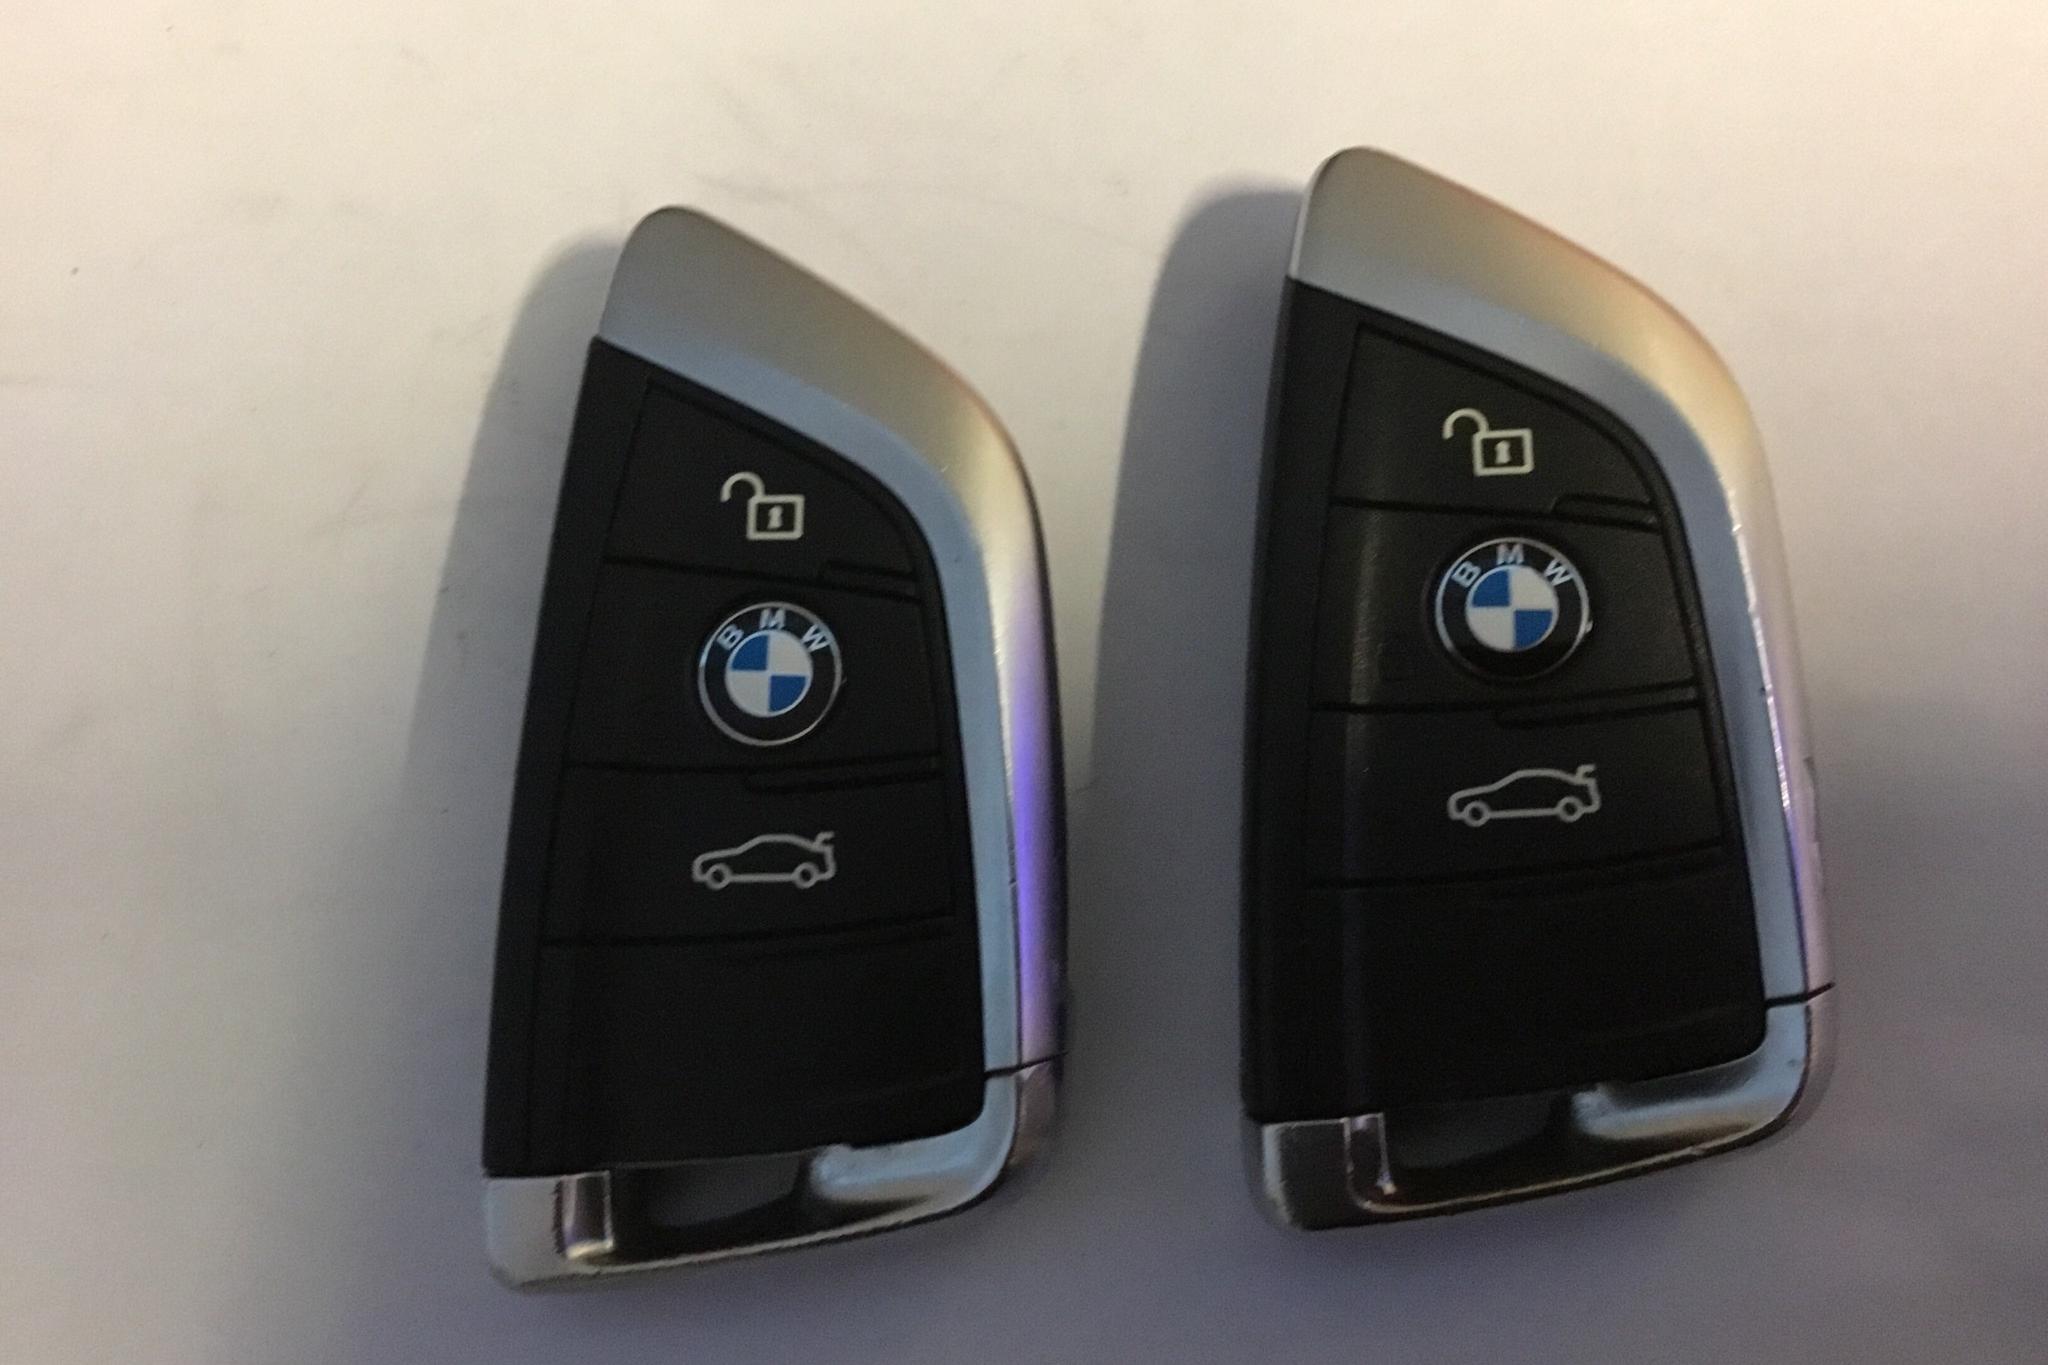 BMW X1 xDrive20d, F48 (190hk) - 64 480 km - Automatic - white - 2016